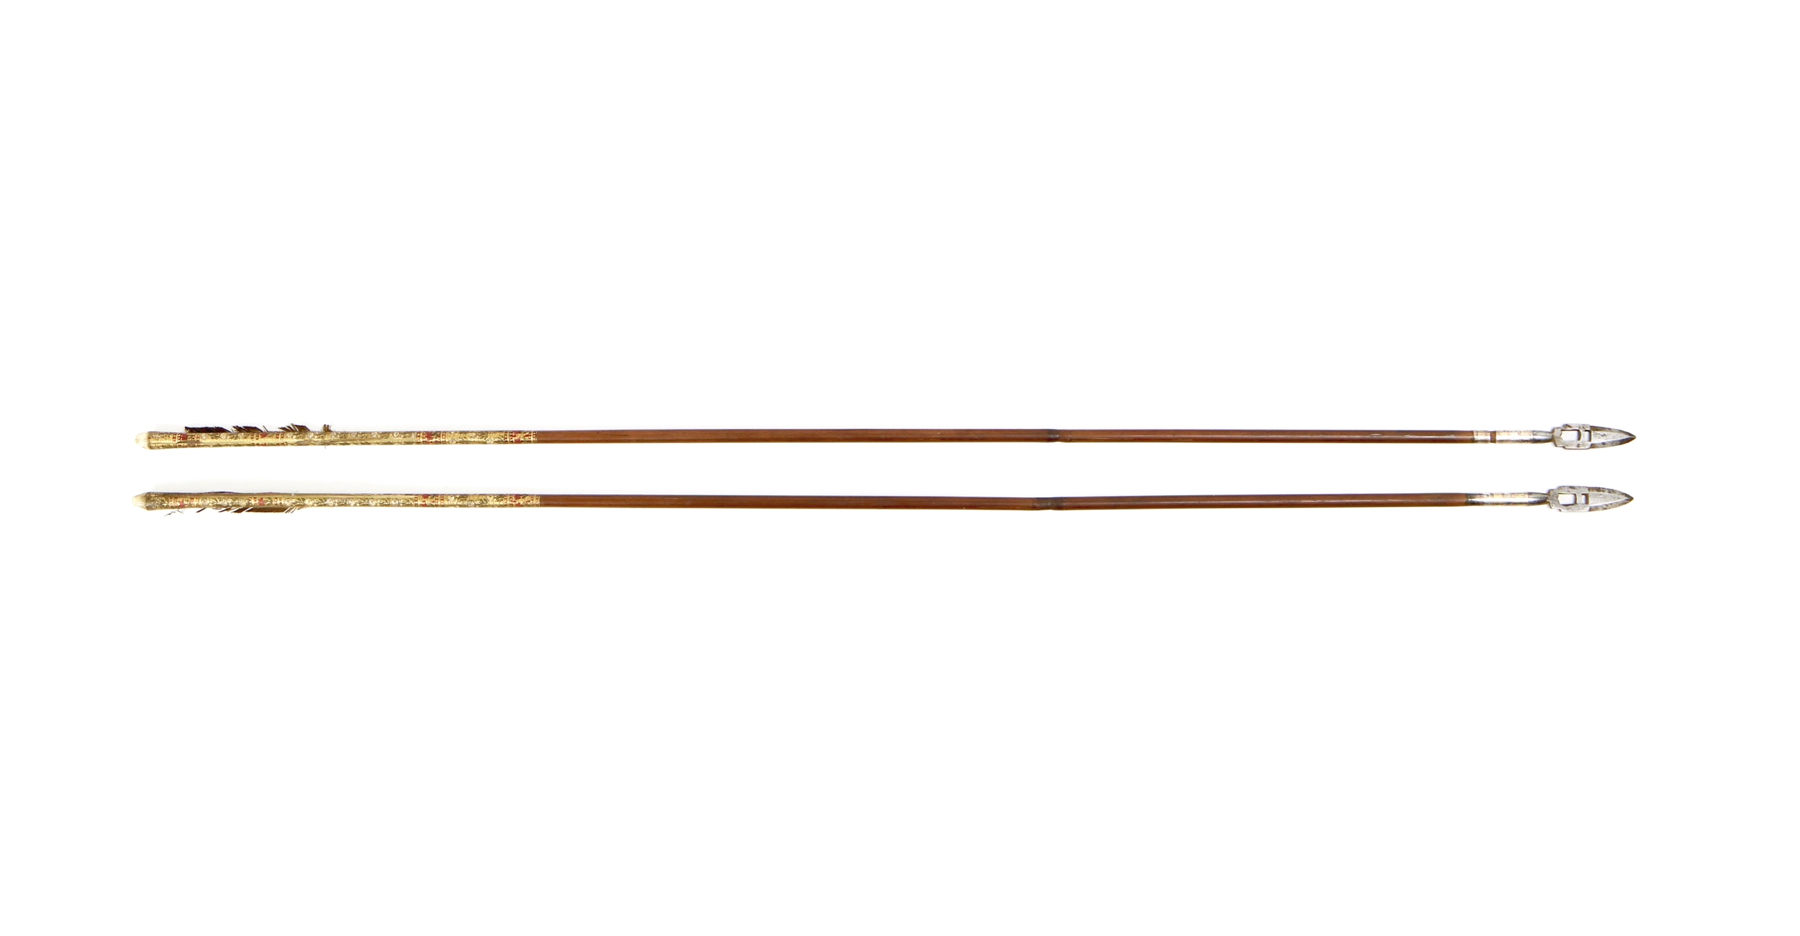 North Indian arrows